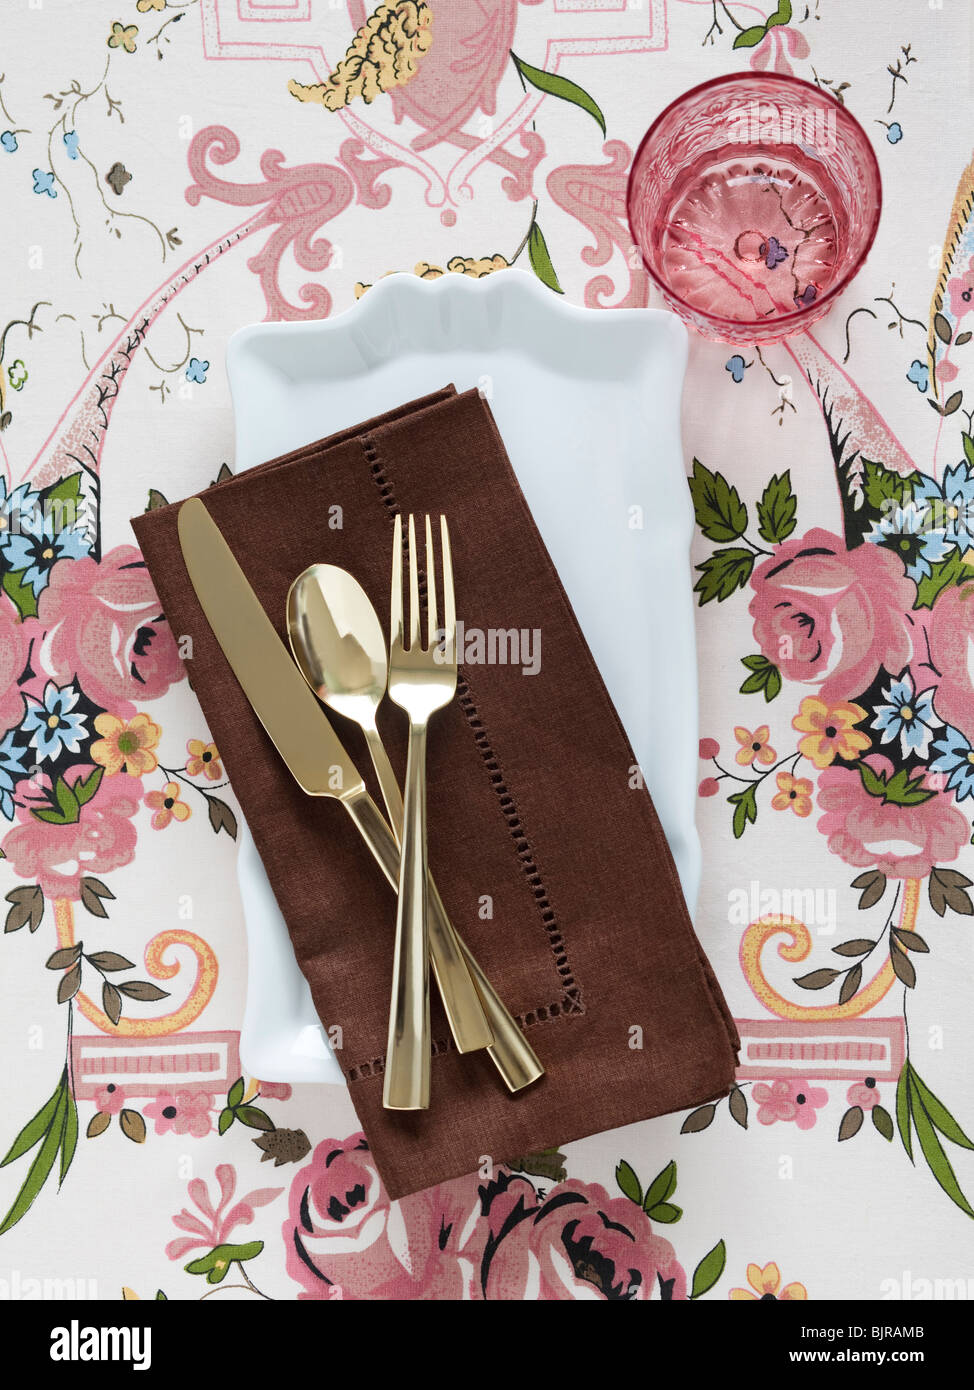 Teller mit Servietten und Besteck auf floral Tischdecke Stockfoto